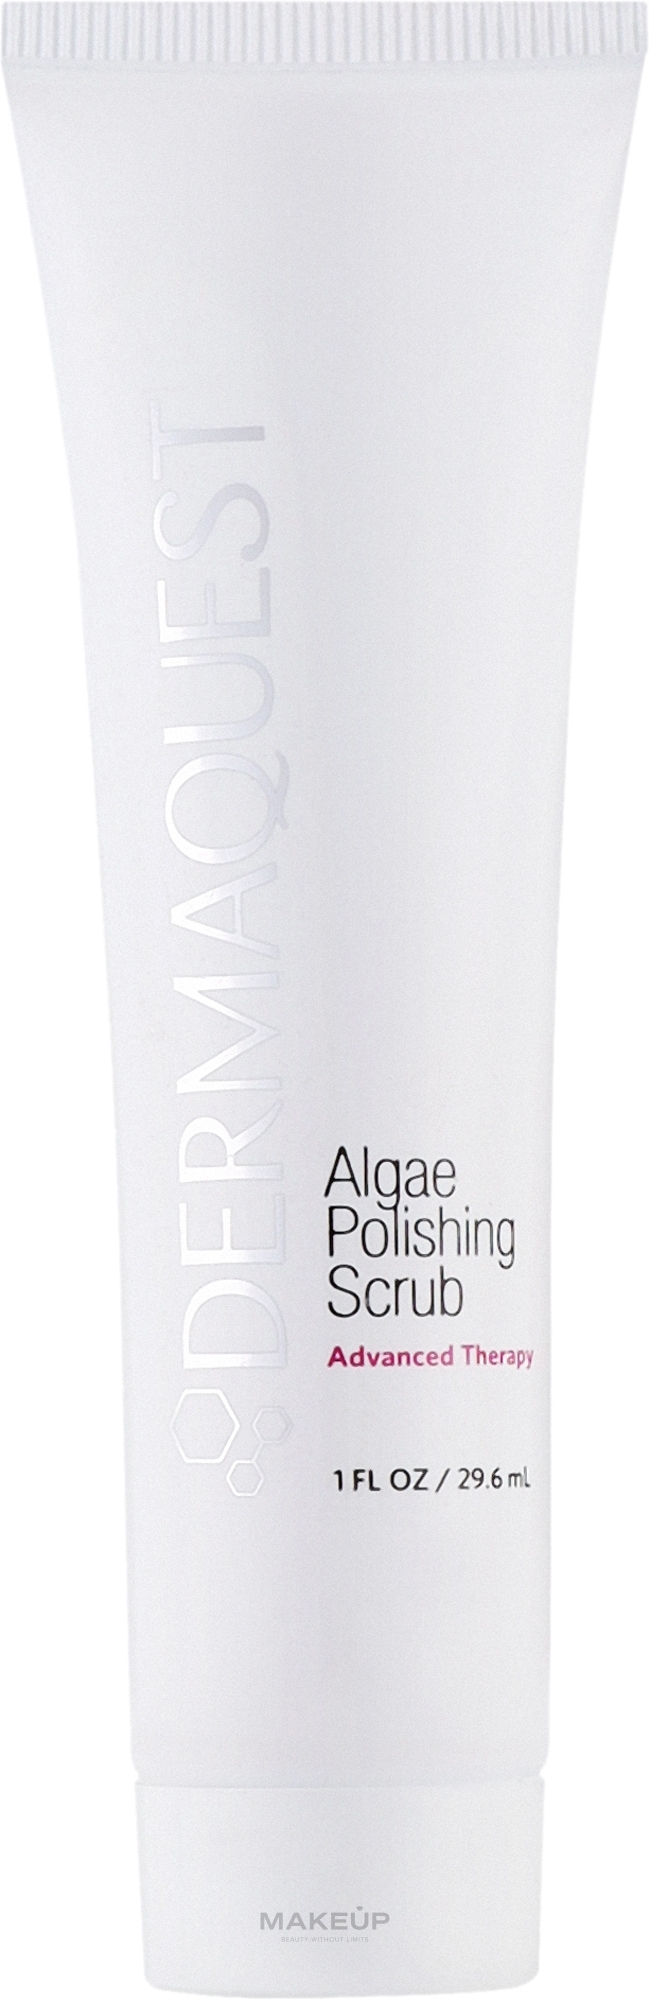 Полирующий скраб с альгинатами для лица - Dermaquest Advanced Therapy Algae Polishing Scrub  — фото 29.6ml